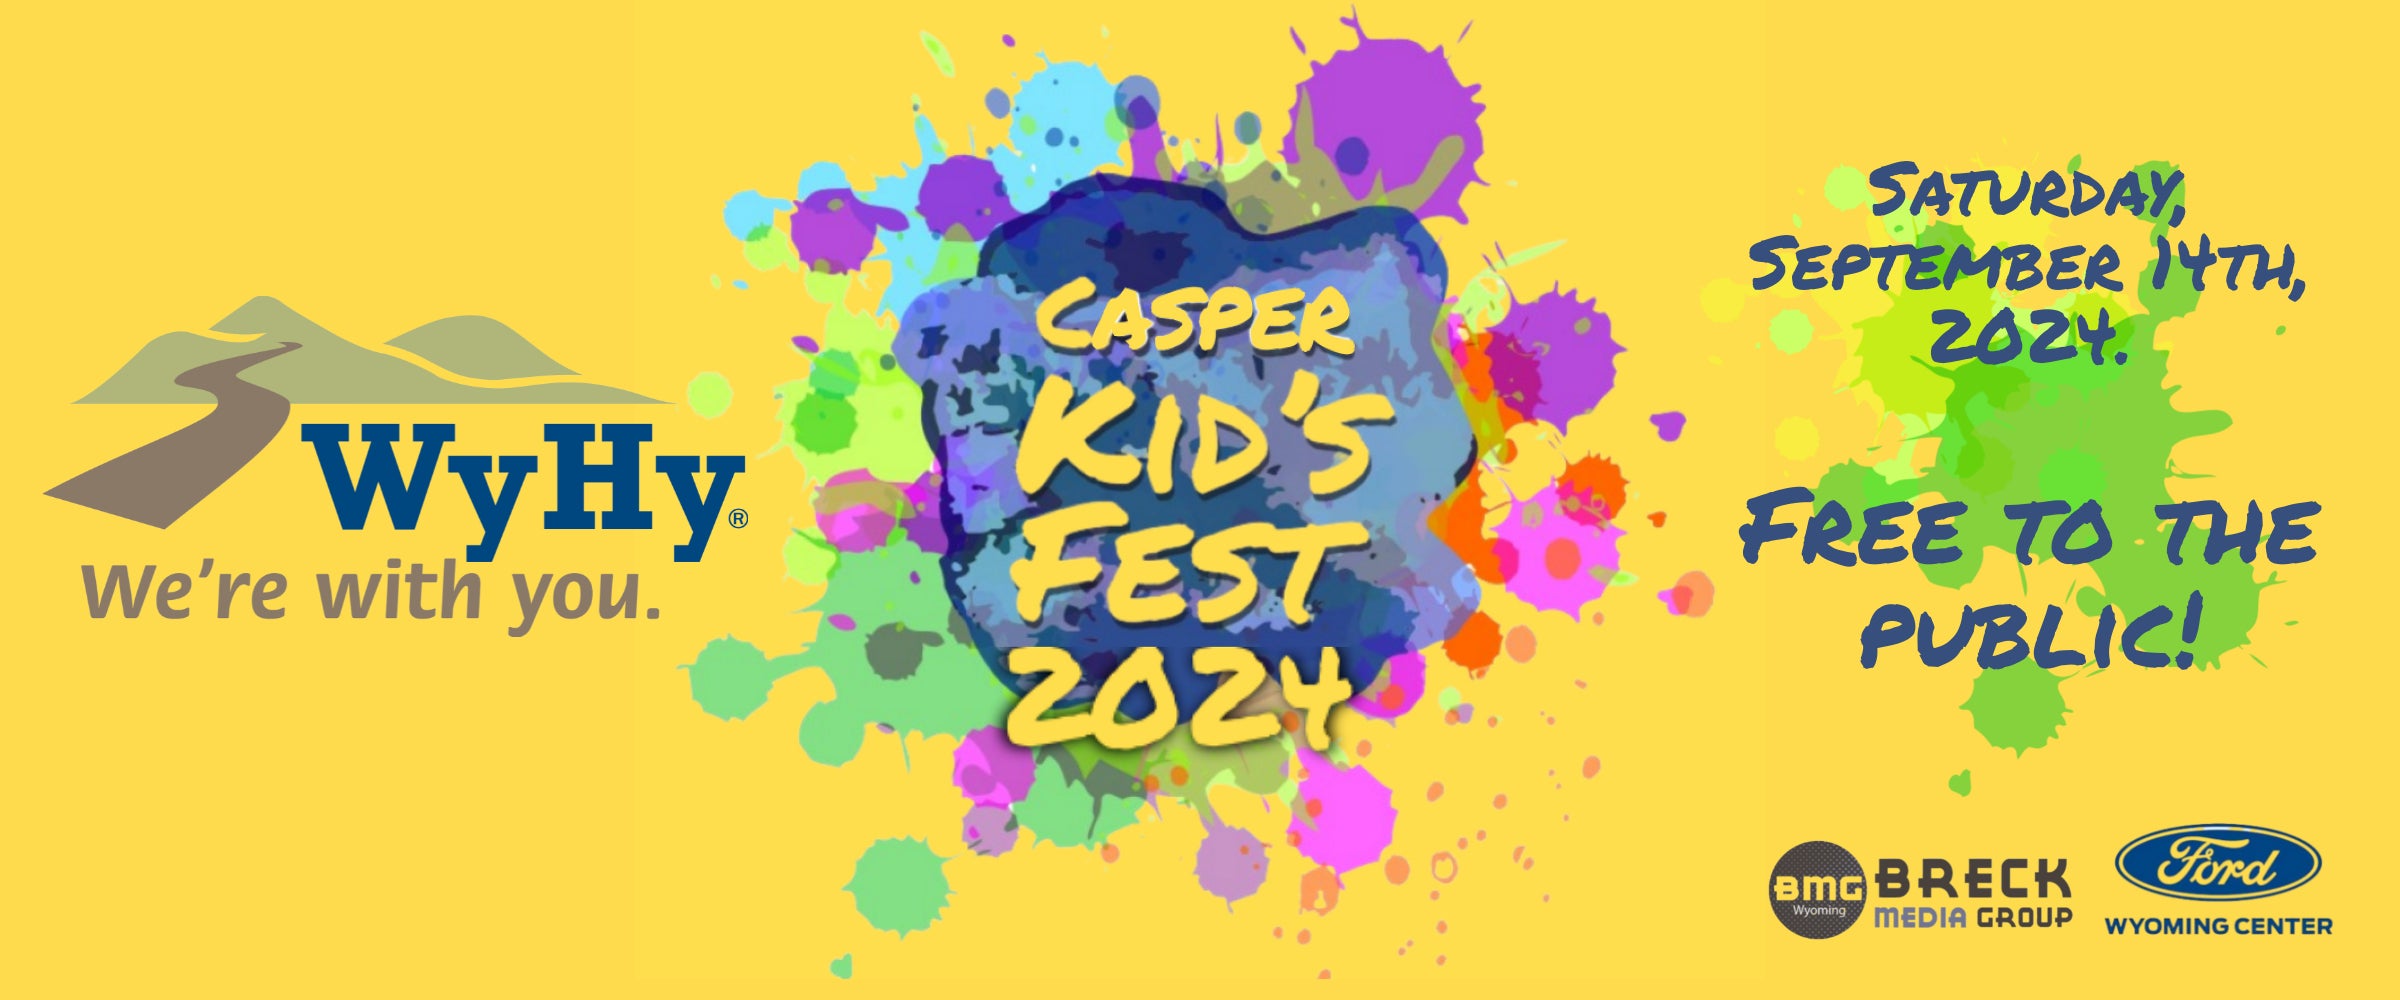 Casper Kid's Fest